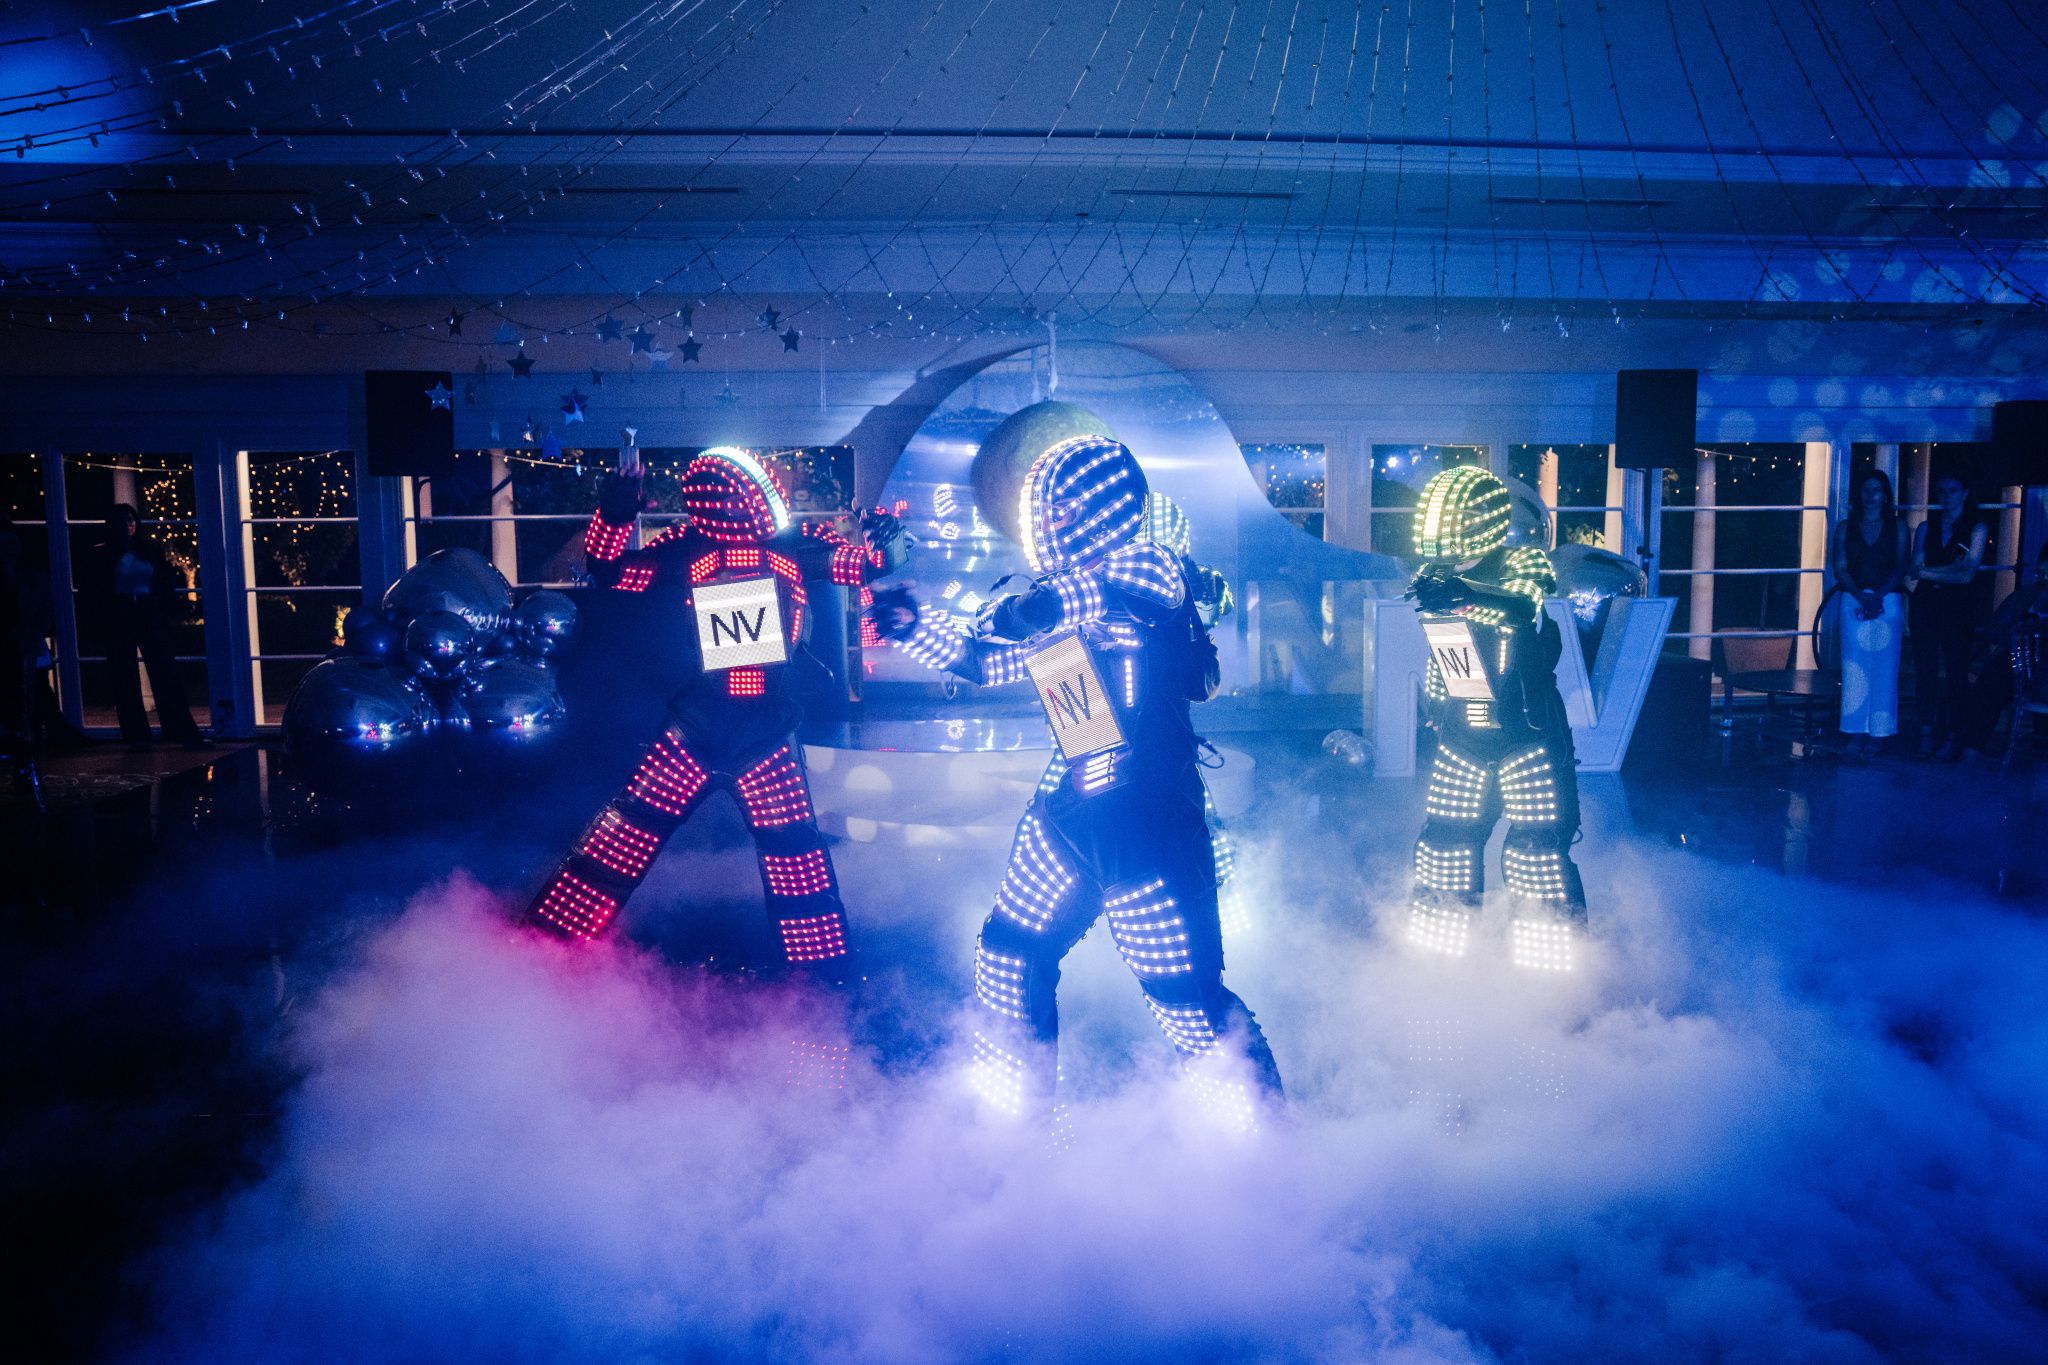 LED Robot Dancers